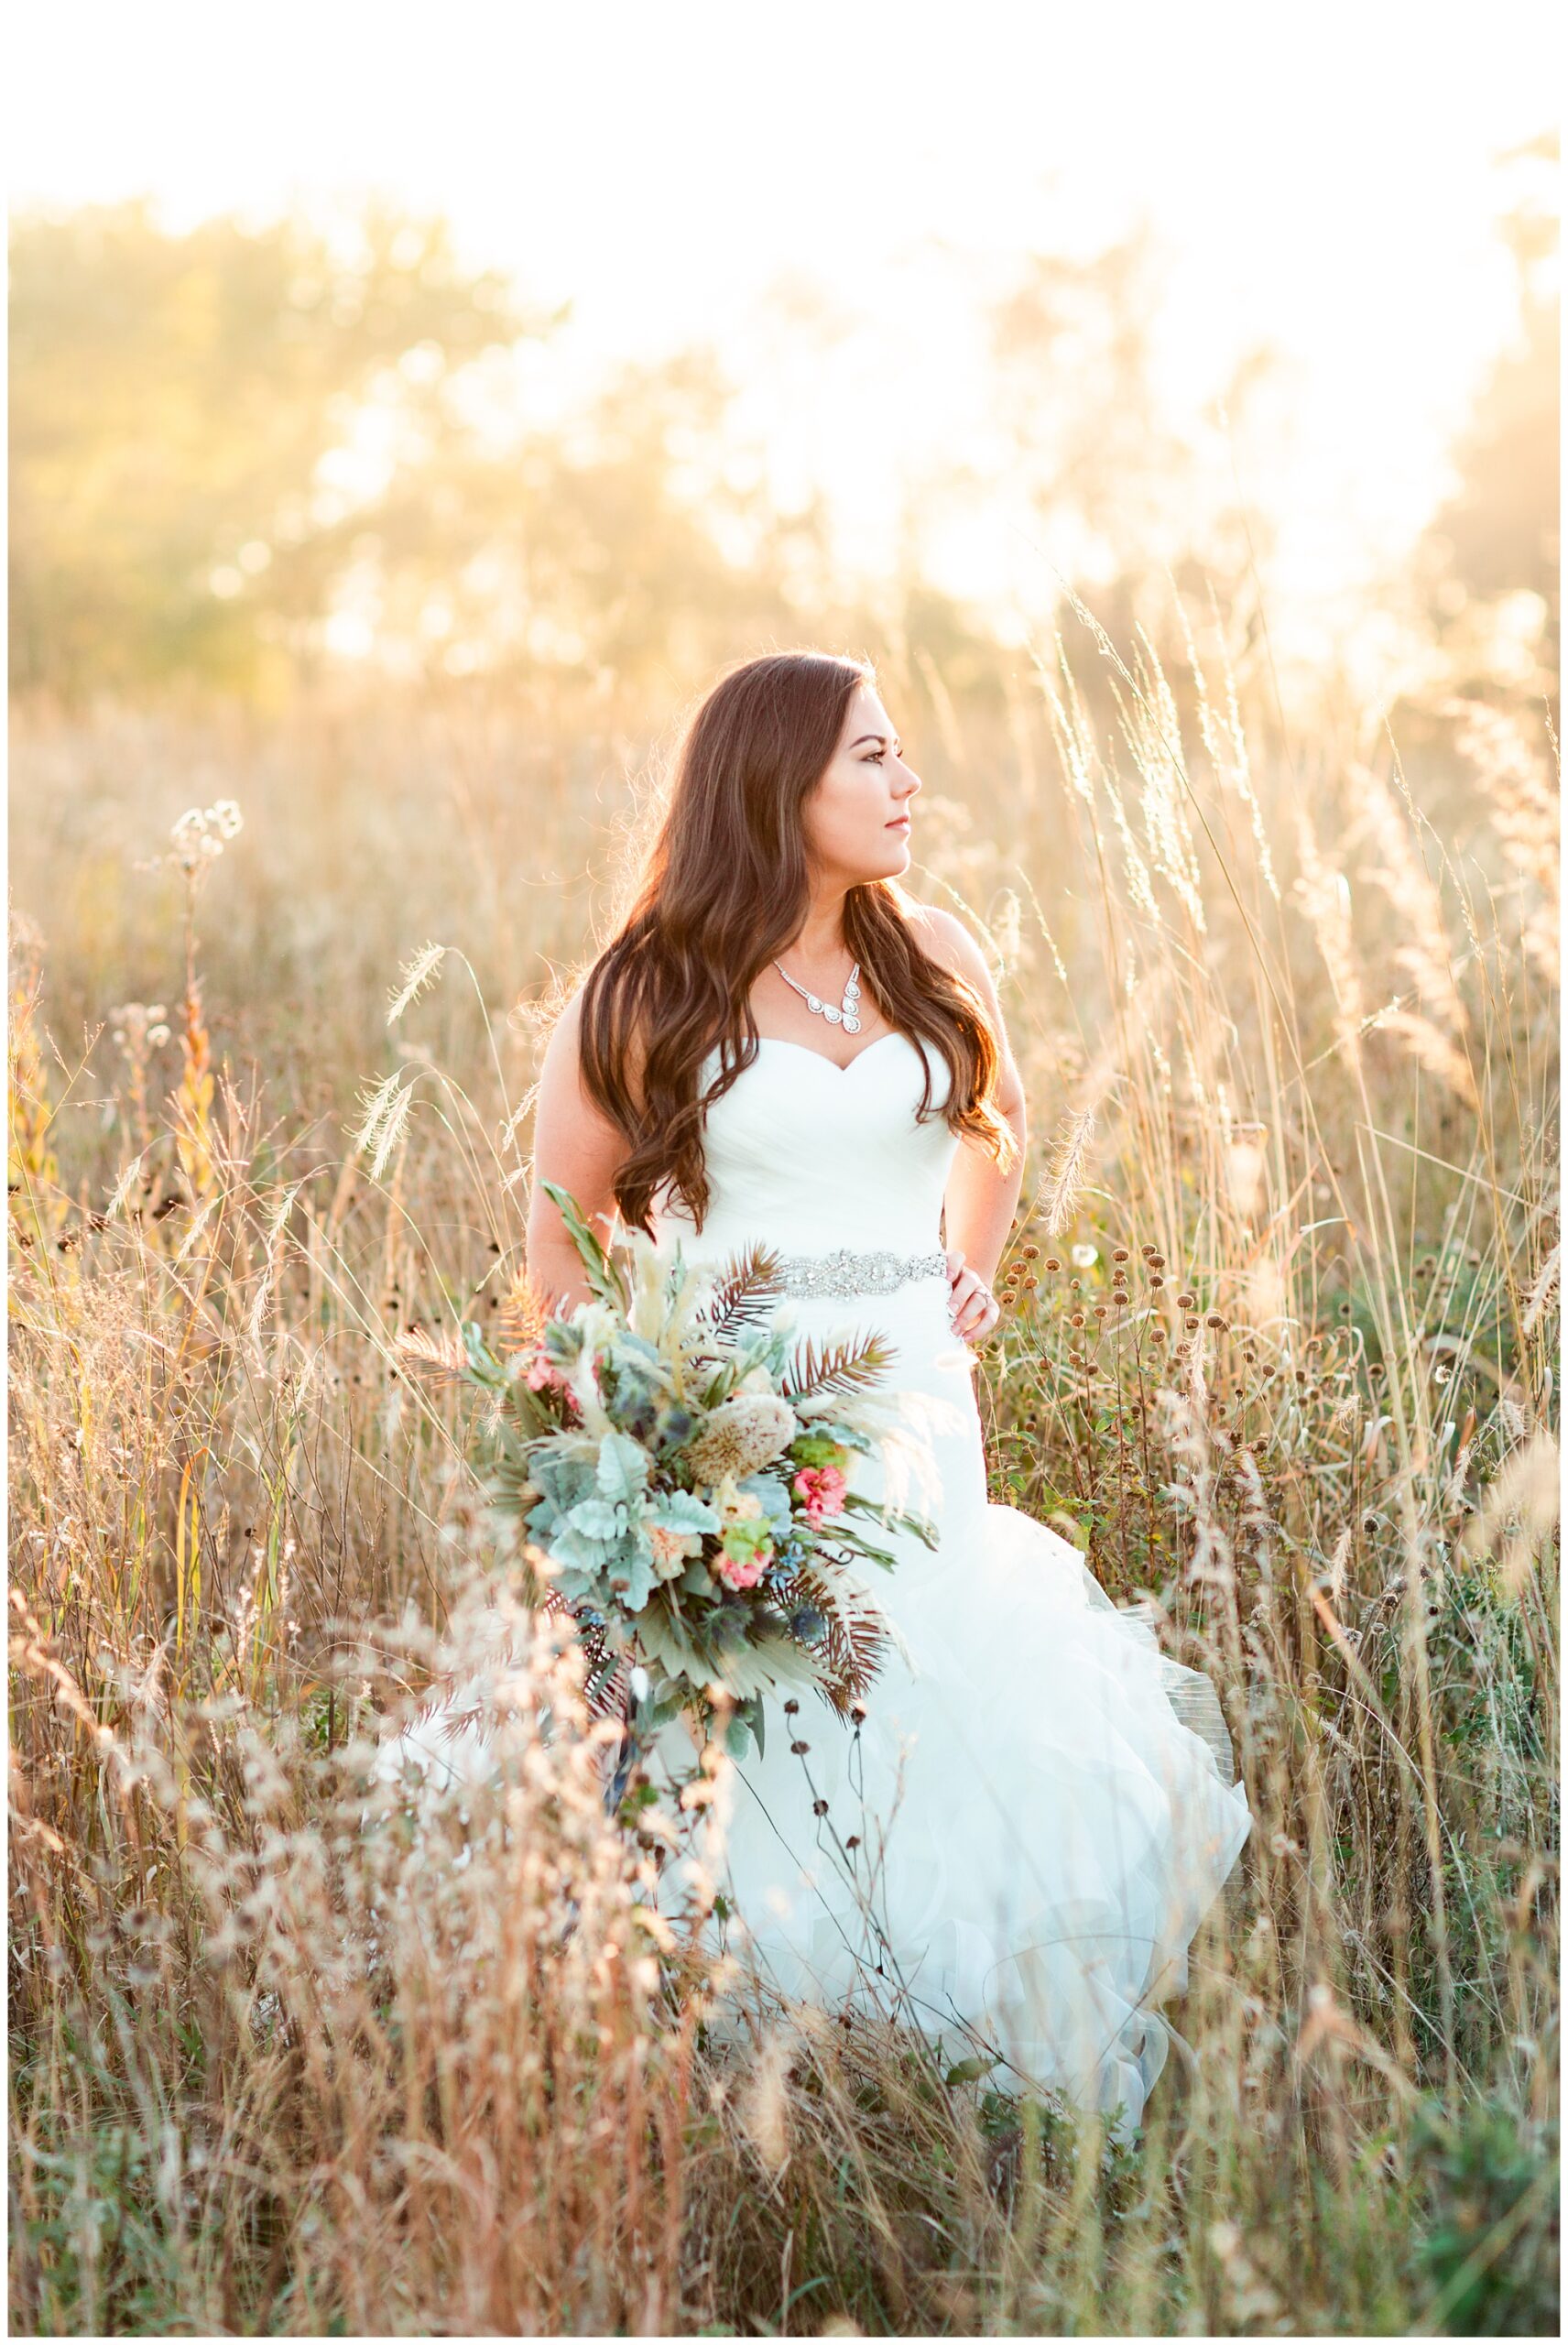 Fall bridal portrait in a tall grassy field